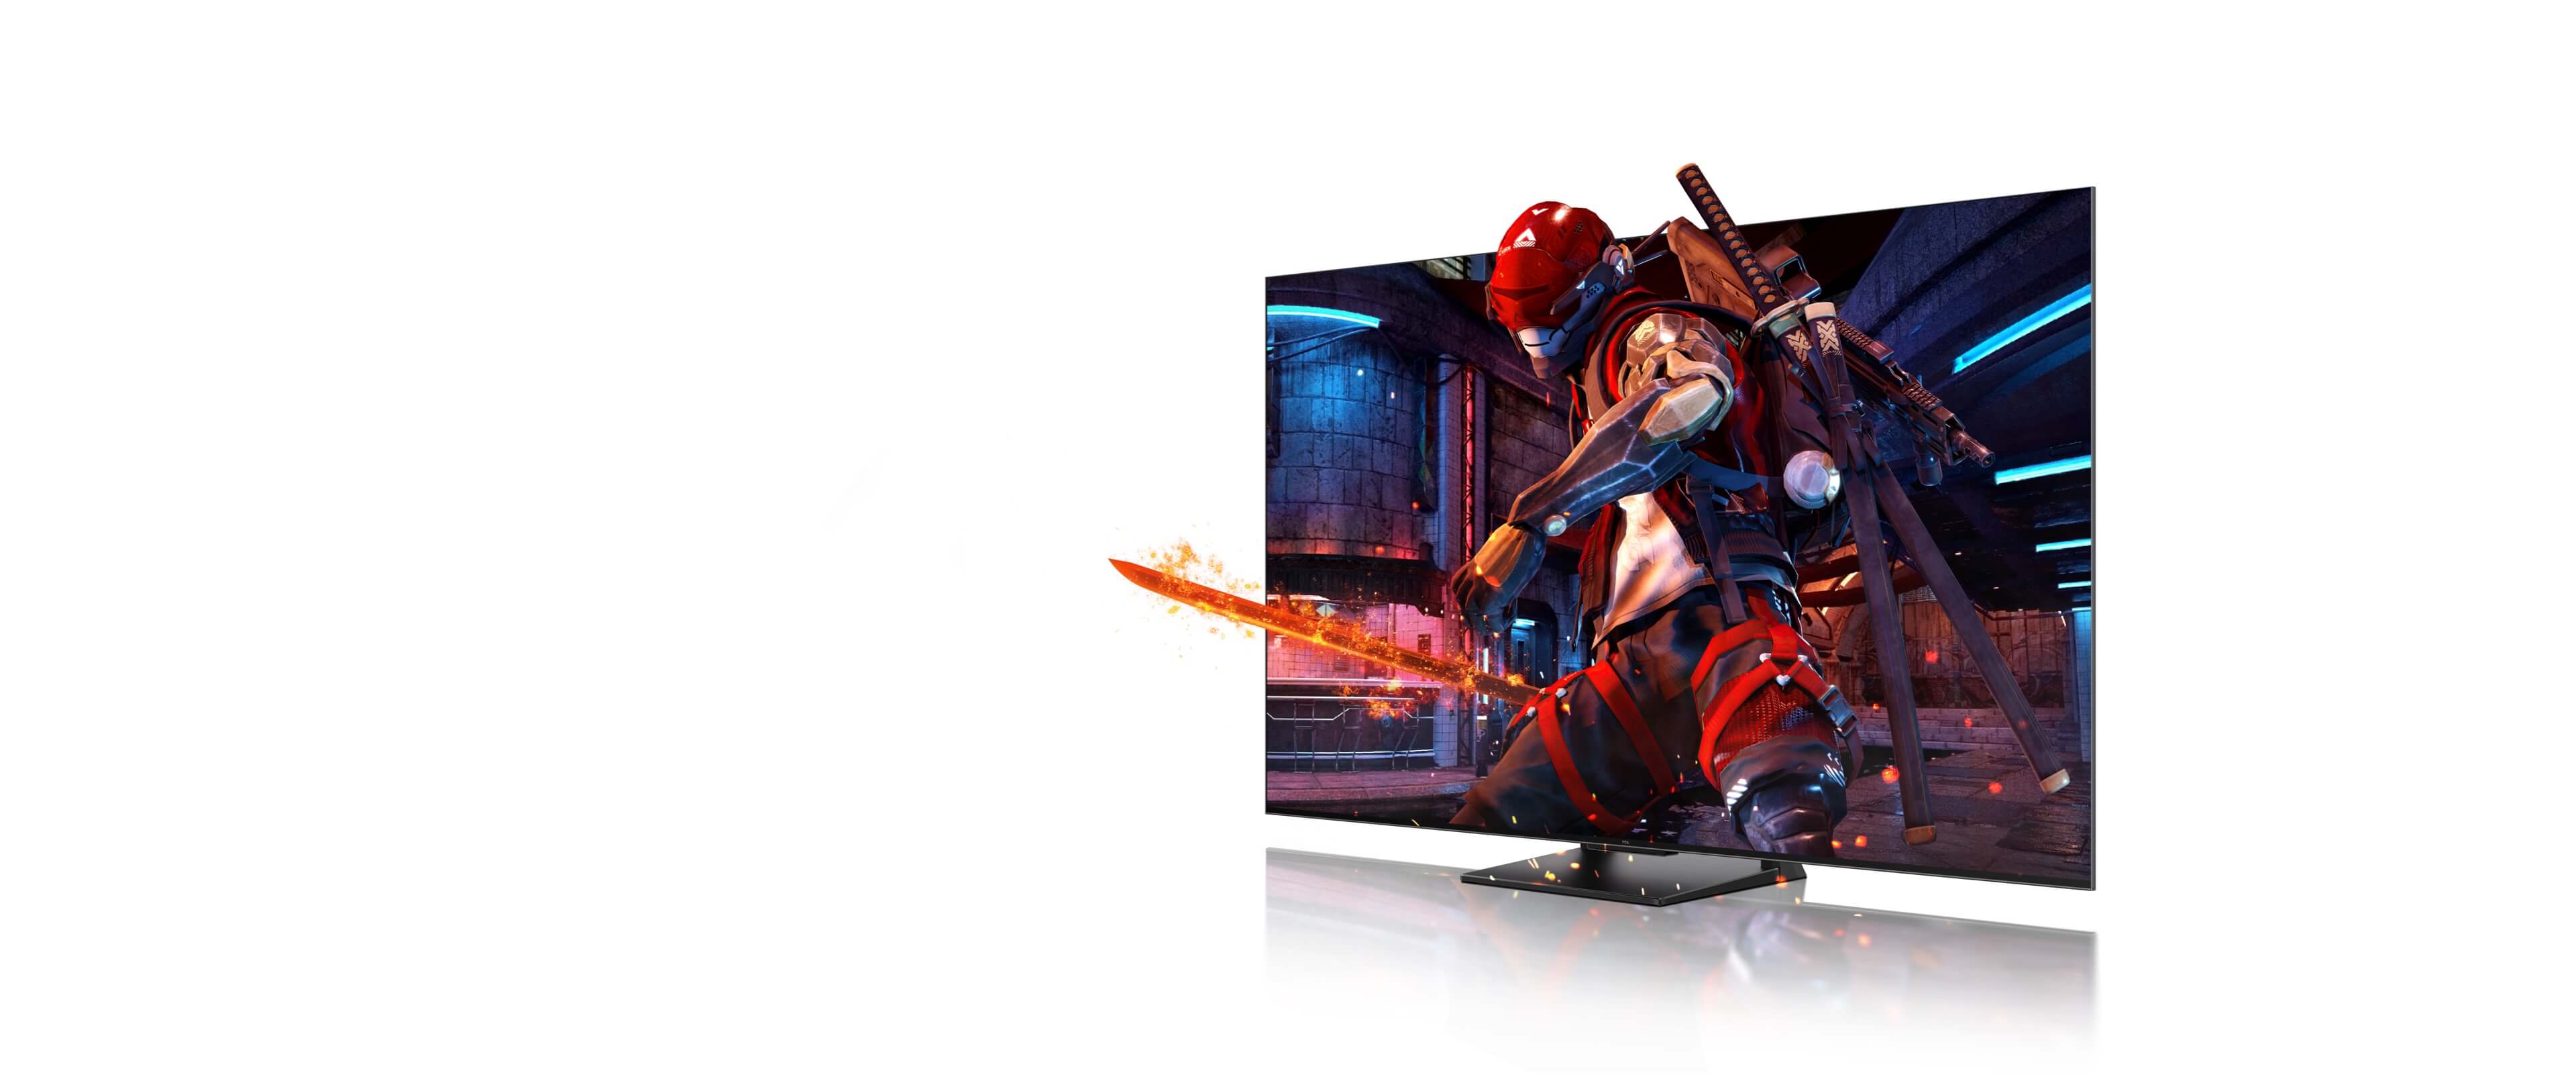 TCL 4K QLED TV<br>Game Master Pro 2.0